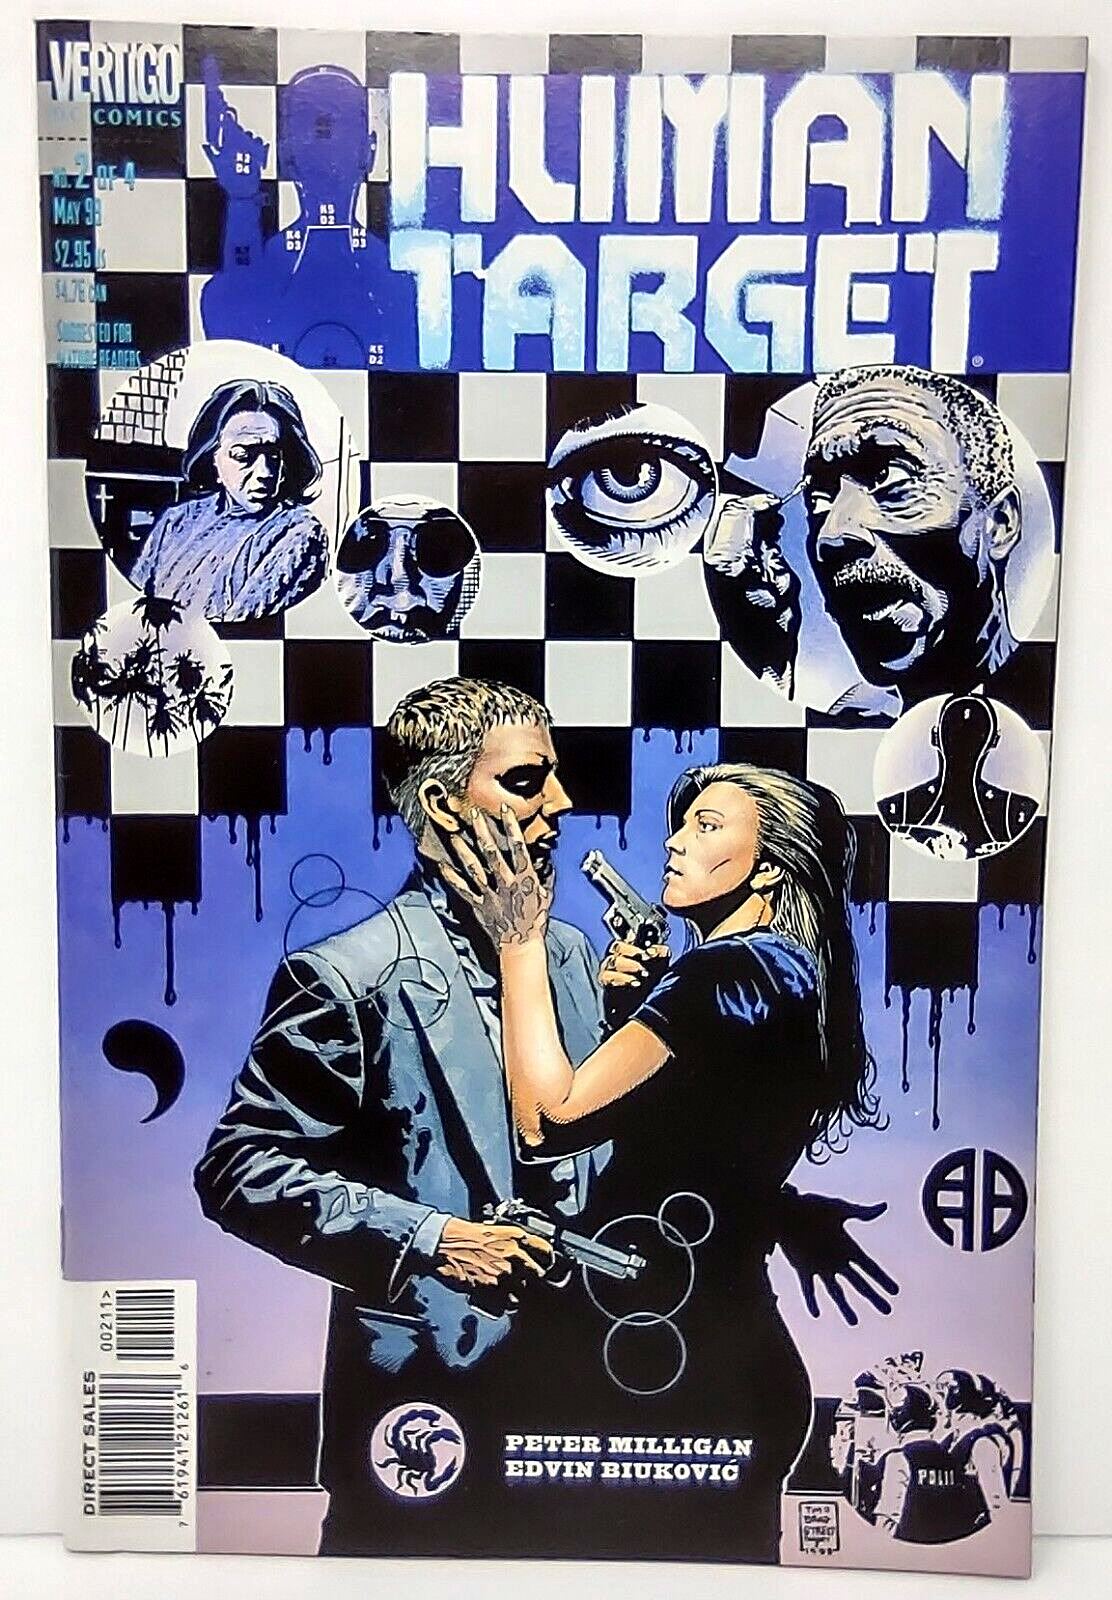 Human Target Issue 2 DC Comics Vertigo 1999